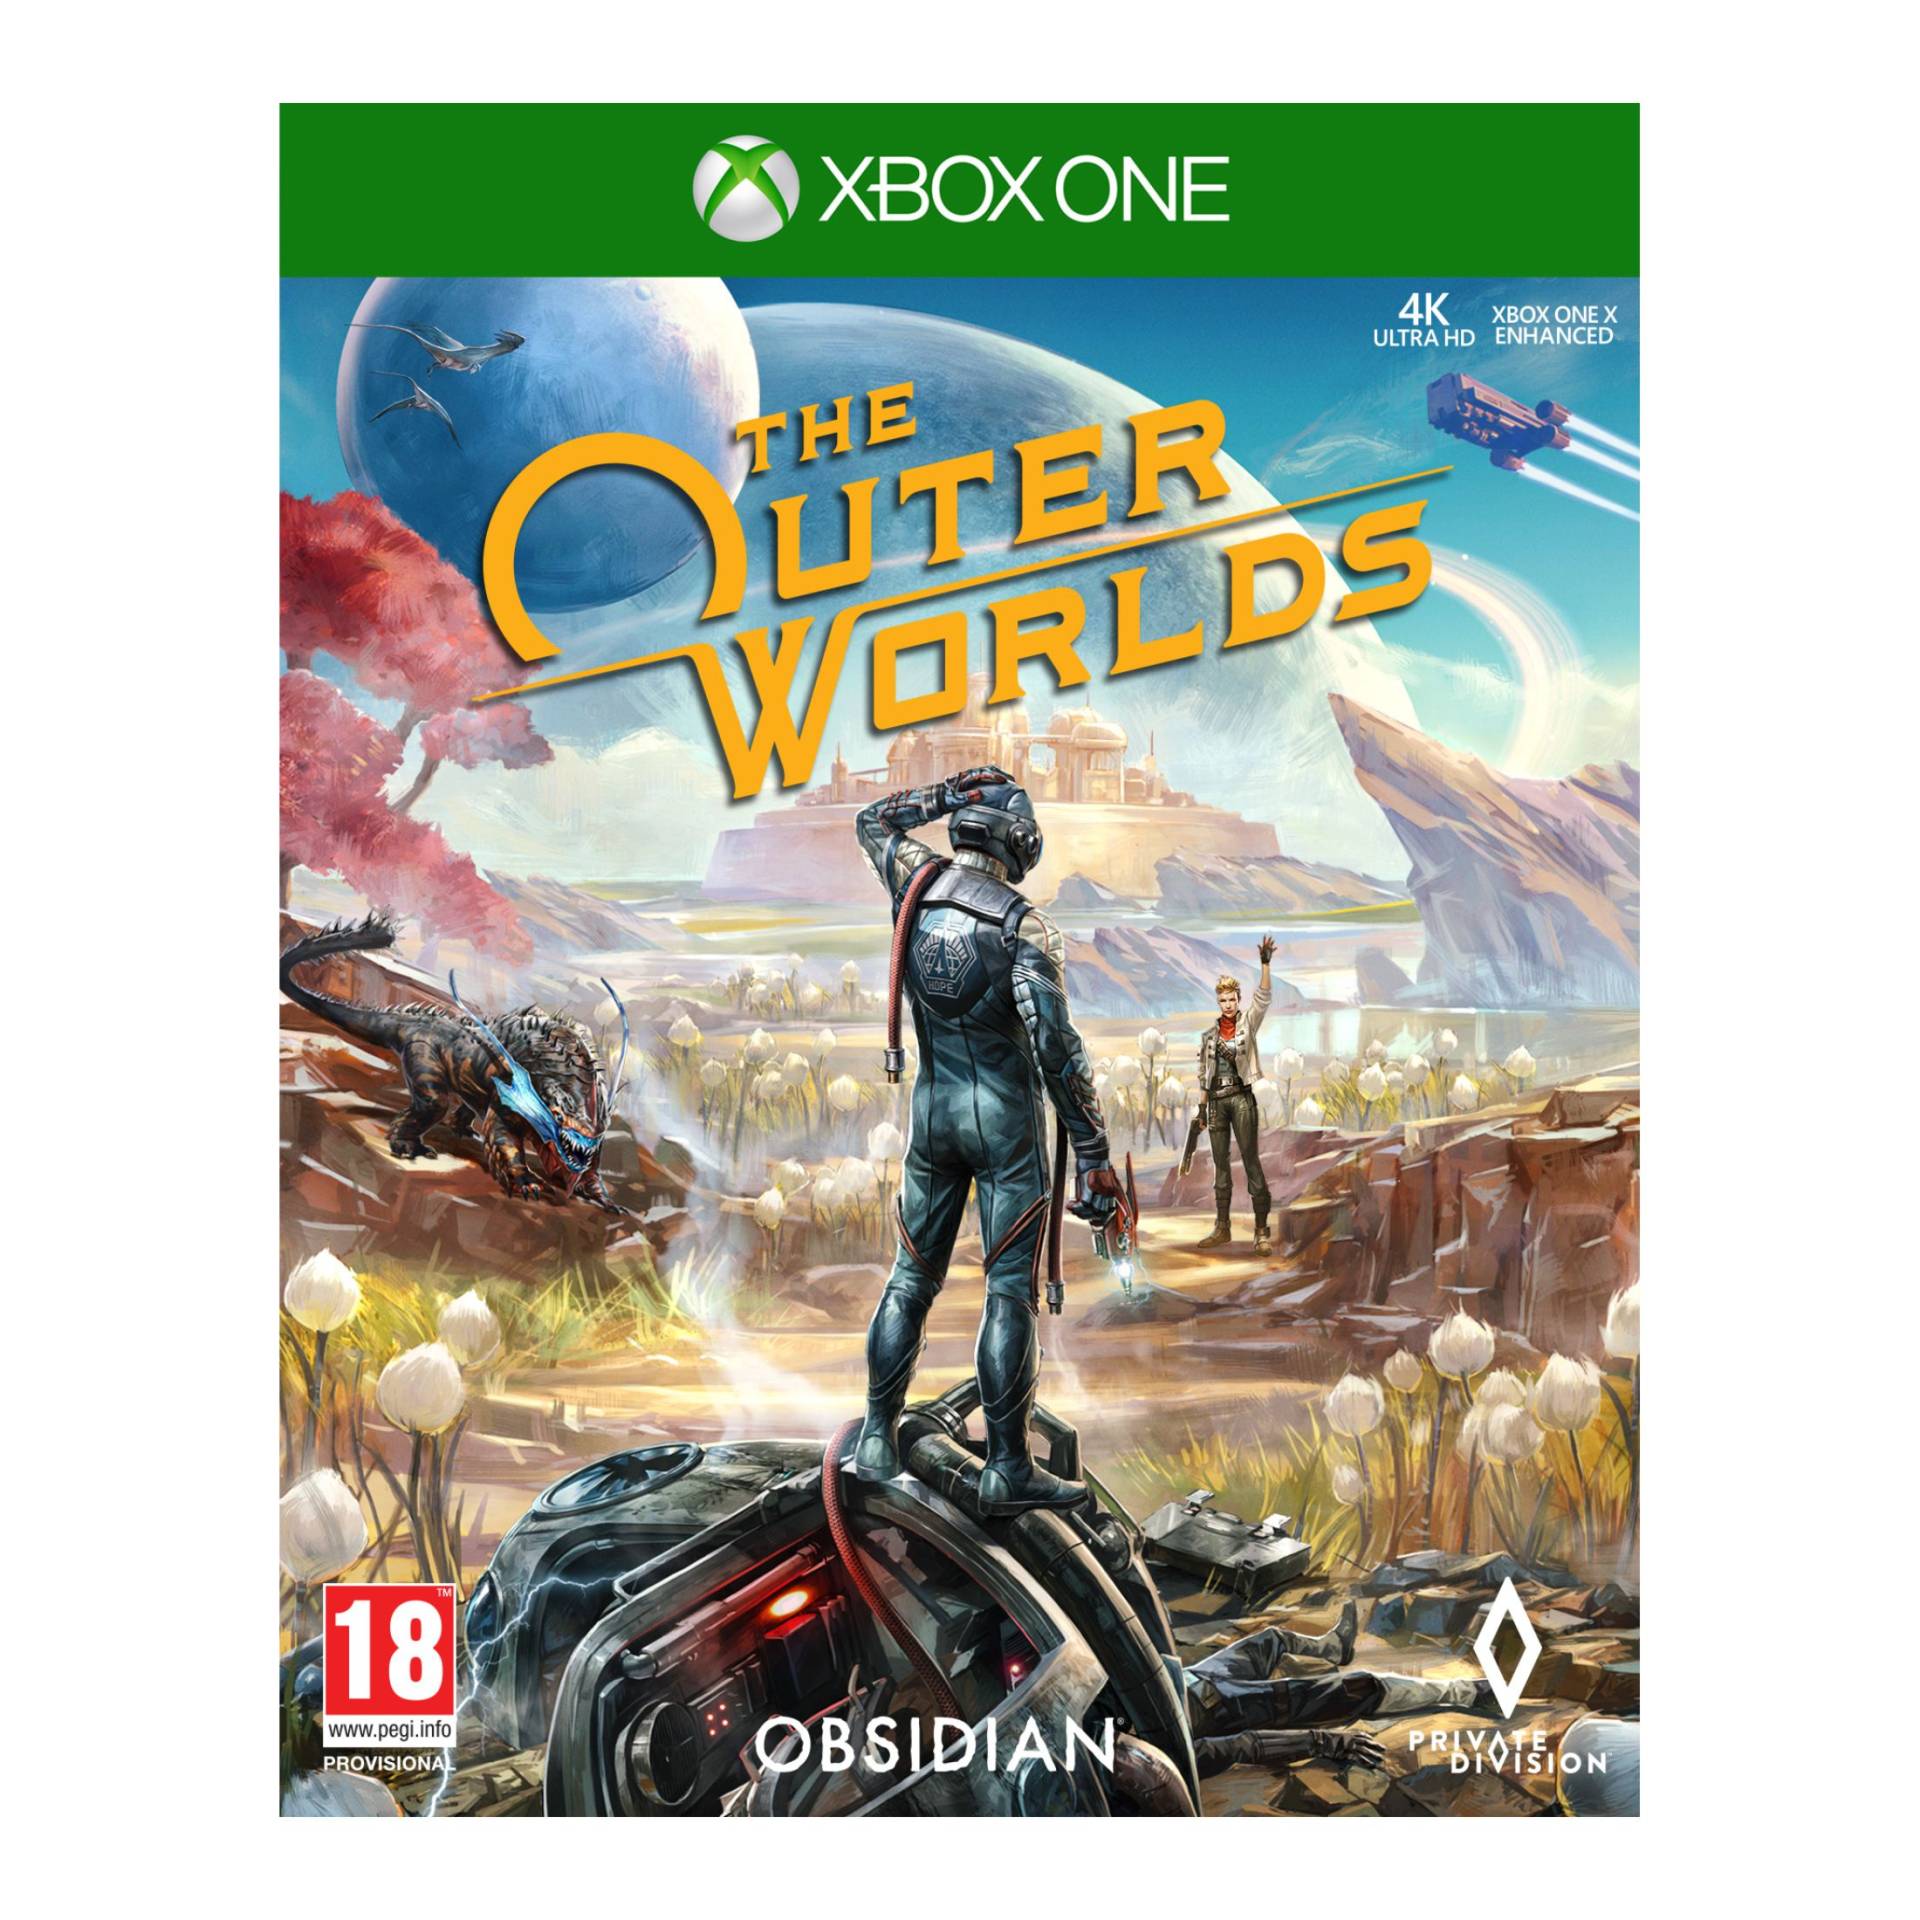 The Outer Worlds von 2K Games